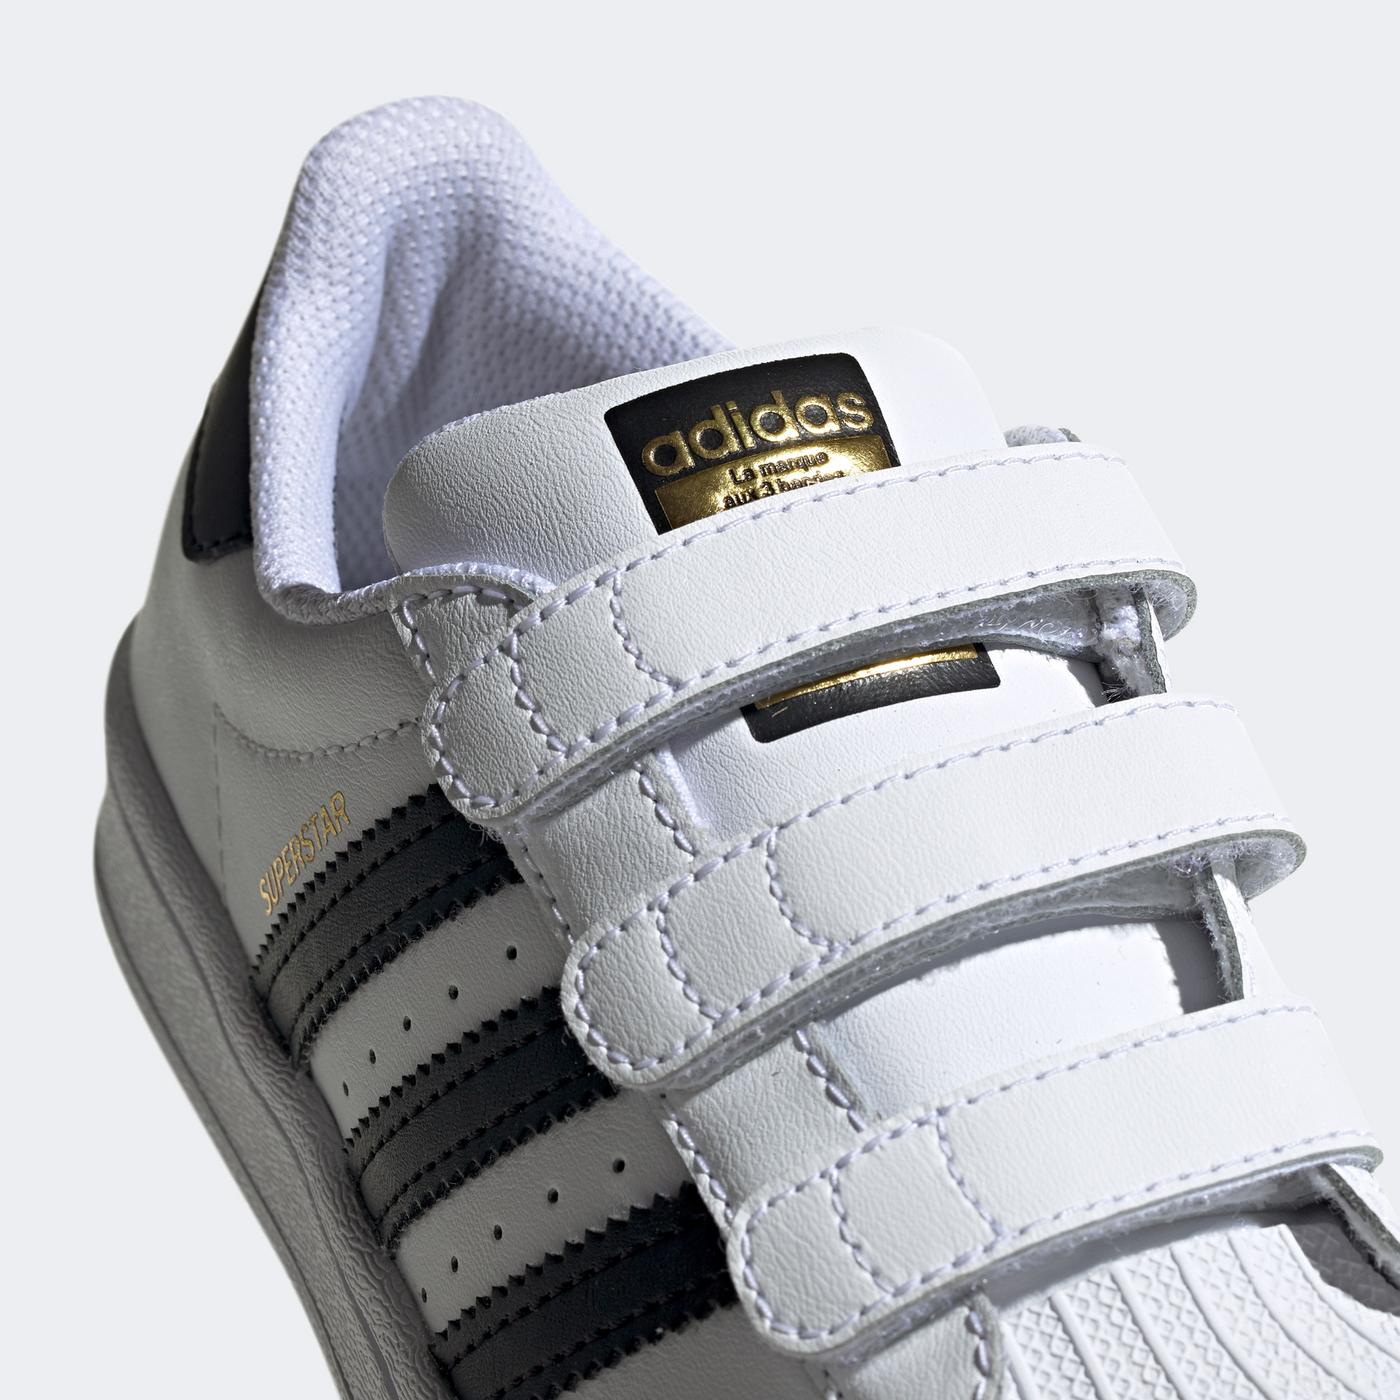 adidas Superstar Çocuk Beyaz Spor Ayakkabı